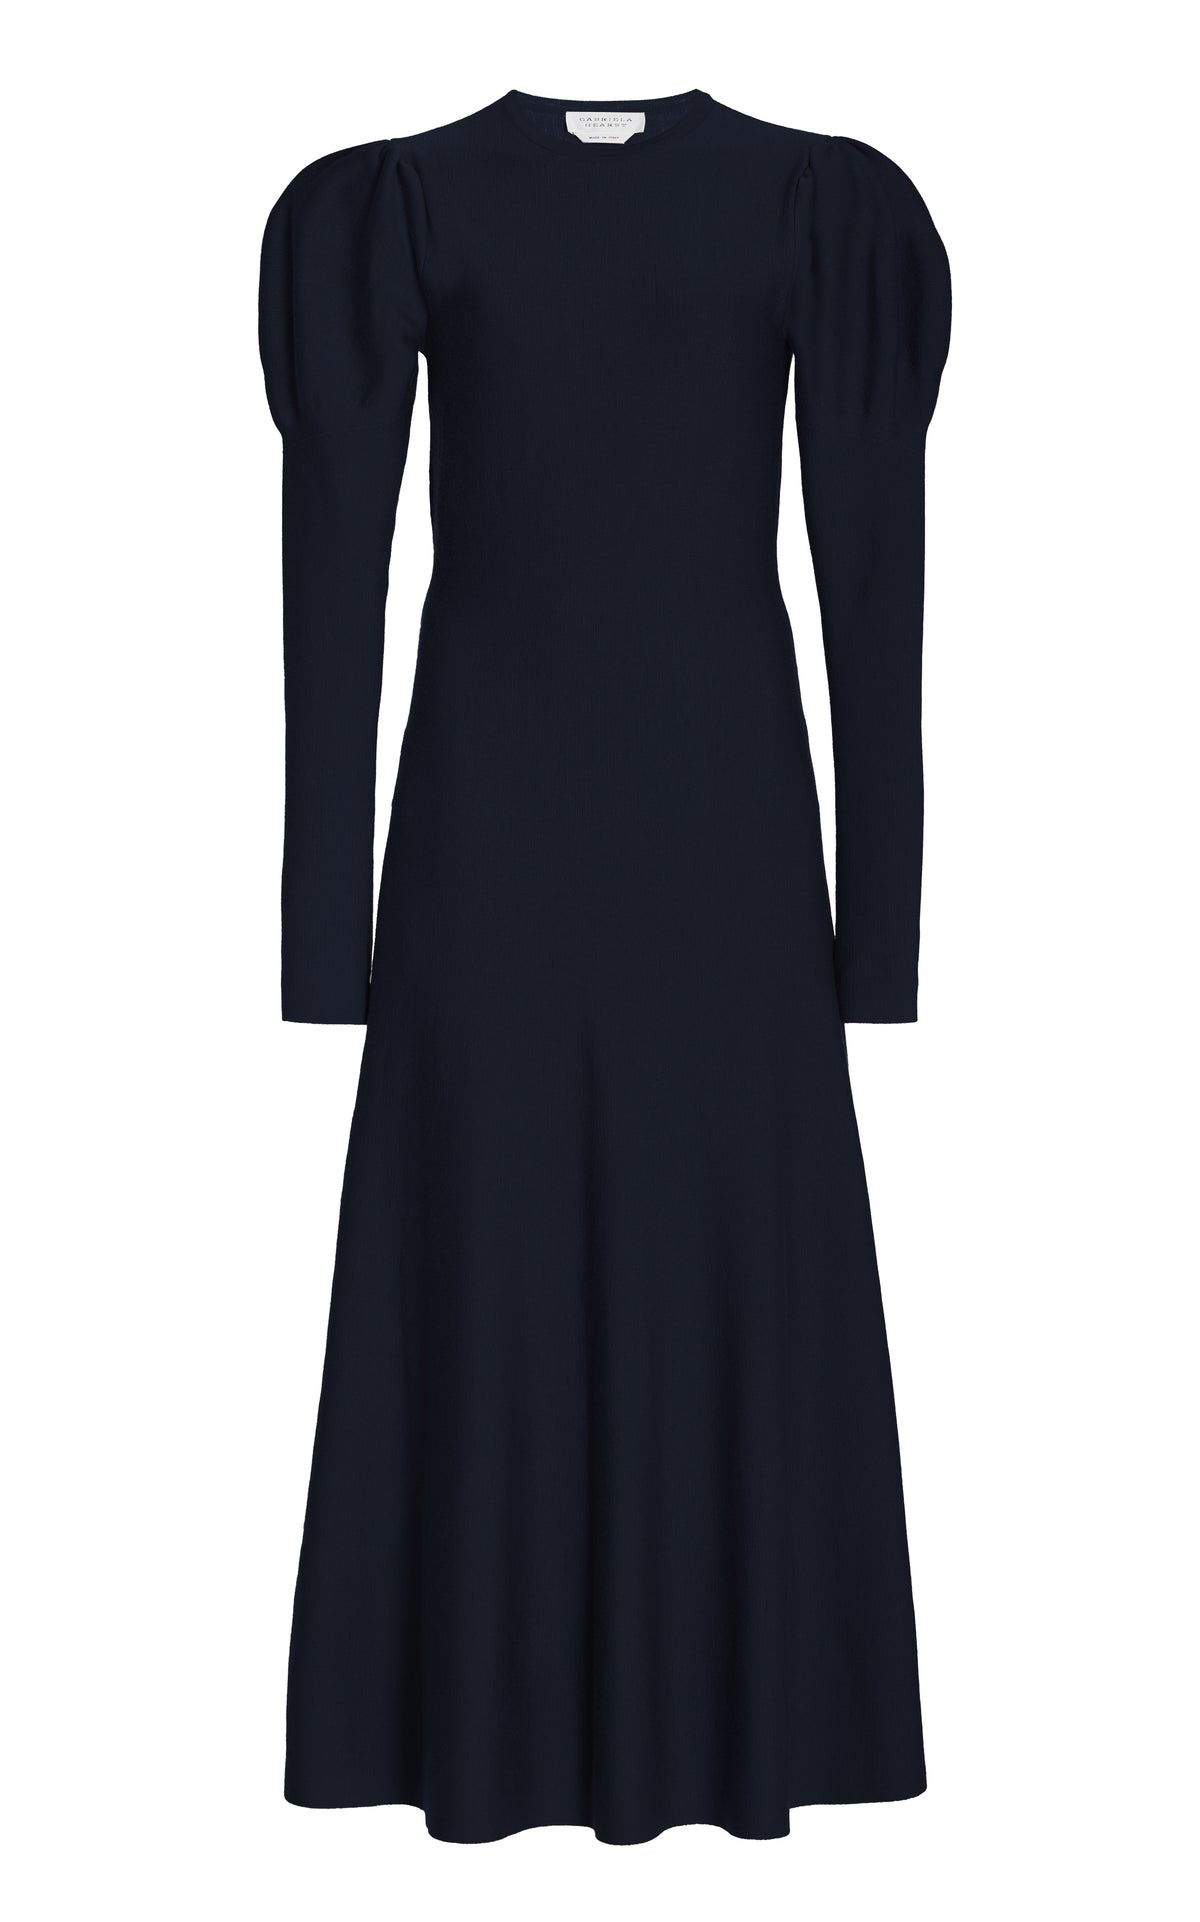 Hannah Knit Dress in Dark Navy Merino Wool